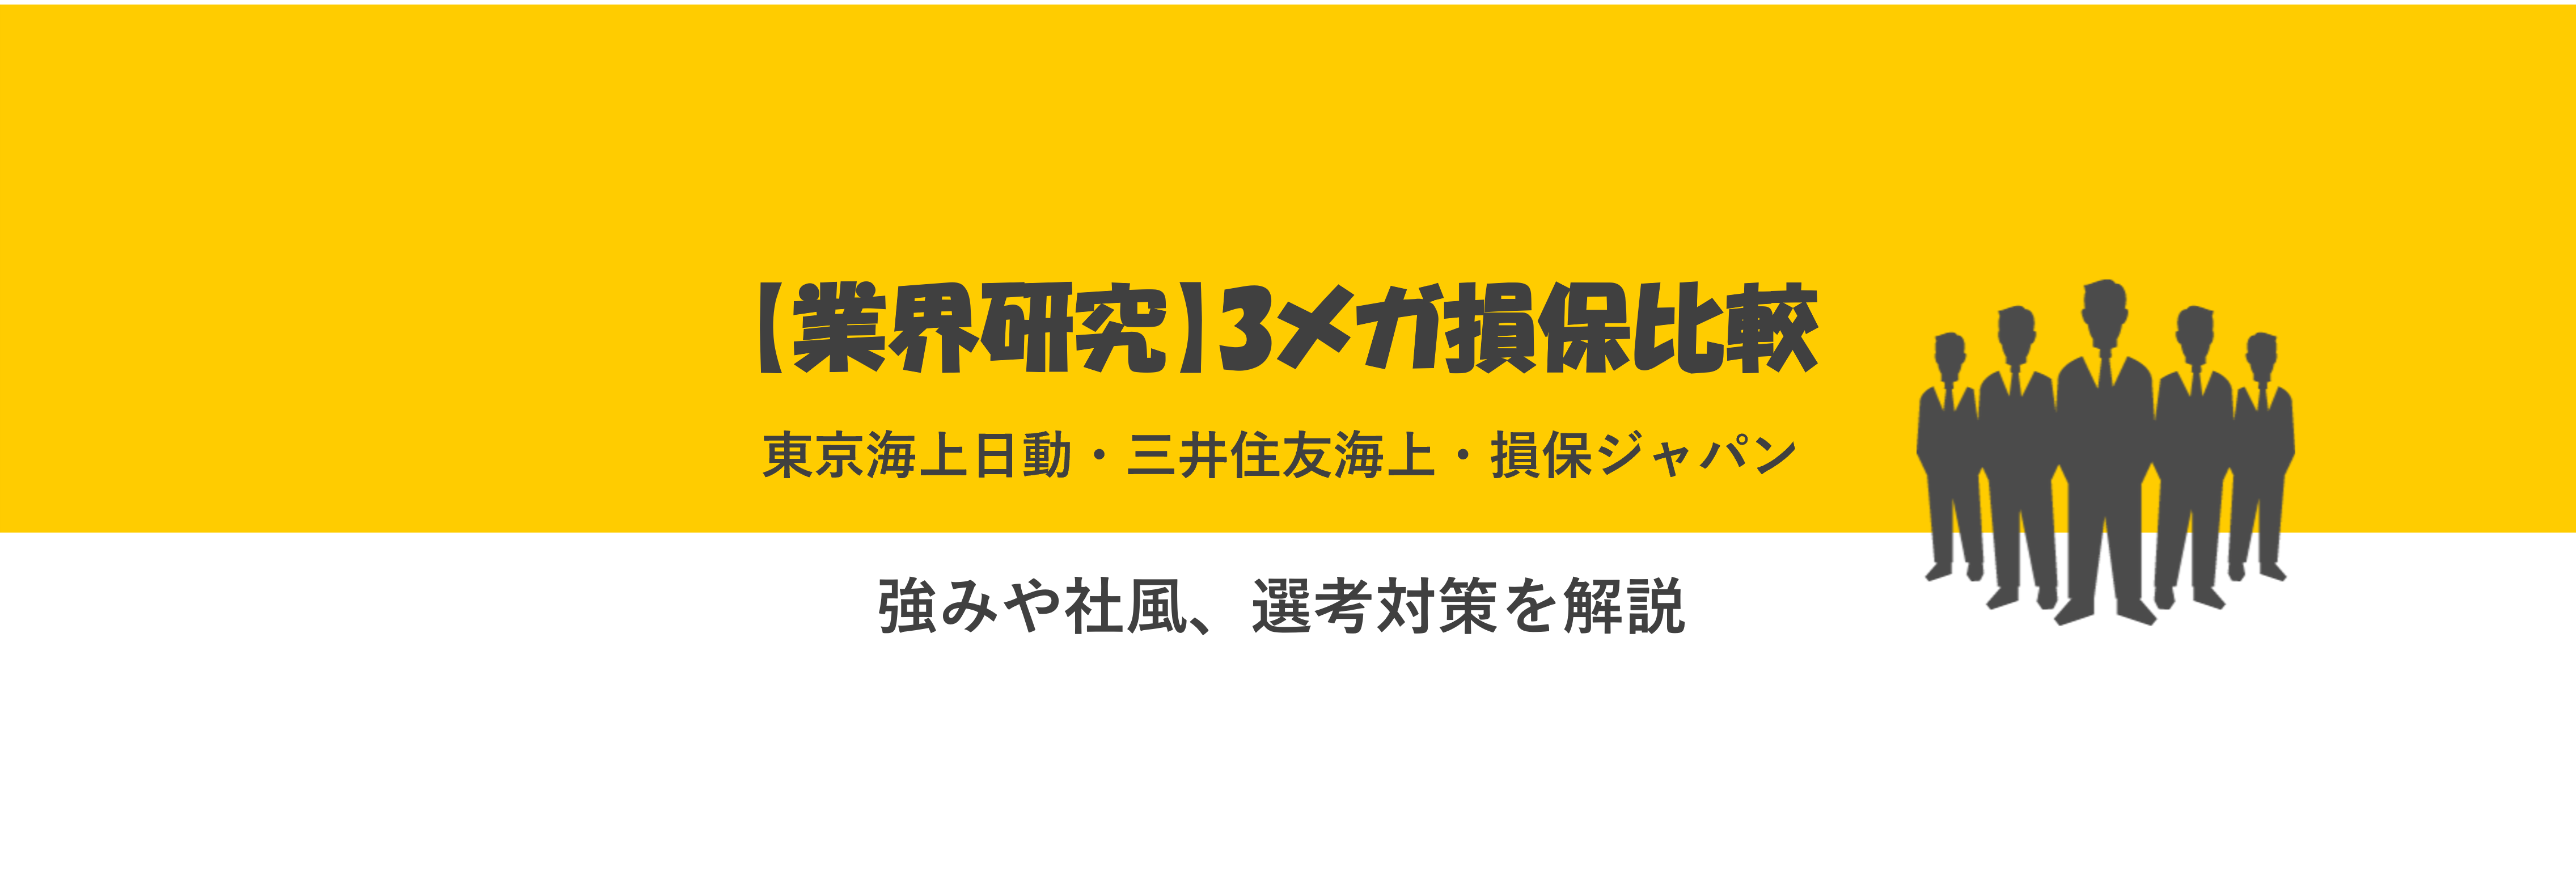 【3メガ損保比較】東京海上日動・三井住友海上・損保ジャパンの強みや社風、選考対策を解説